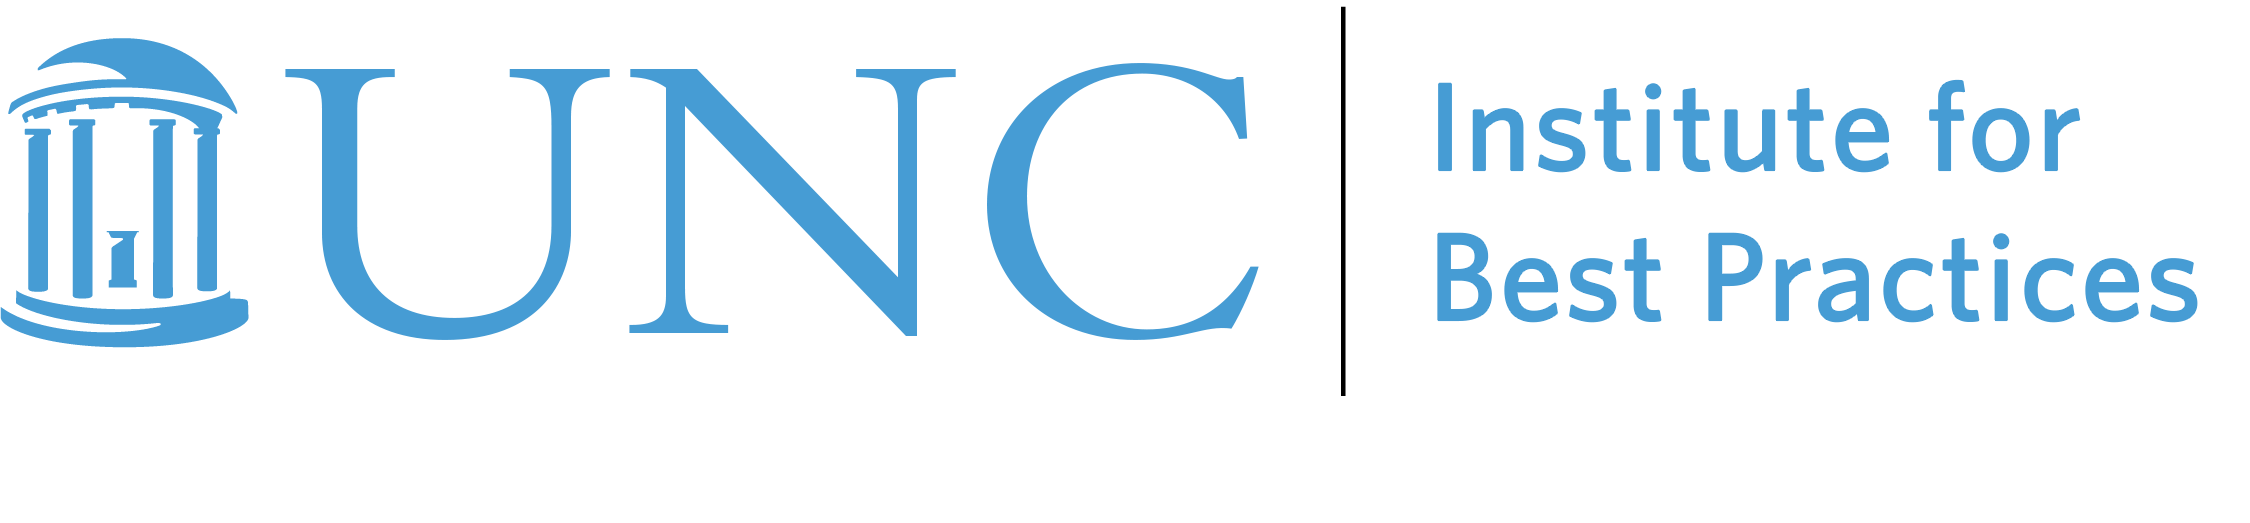 UNC Institute for Best Practices logo